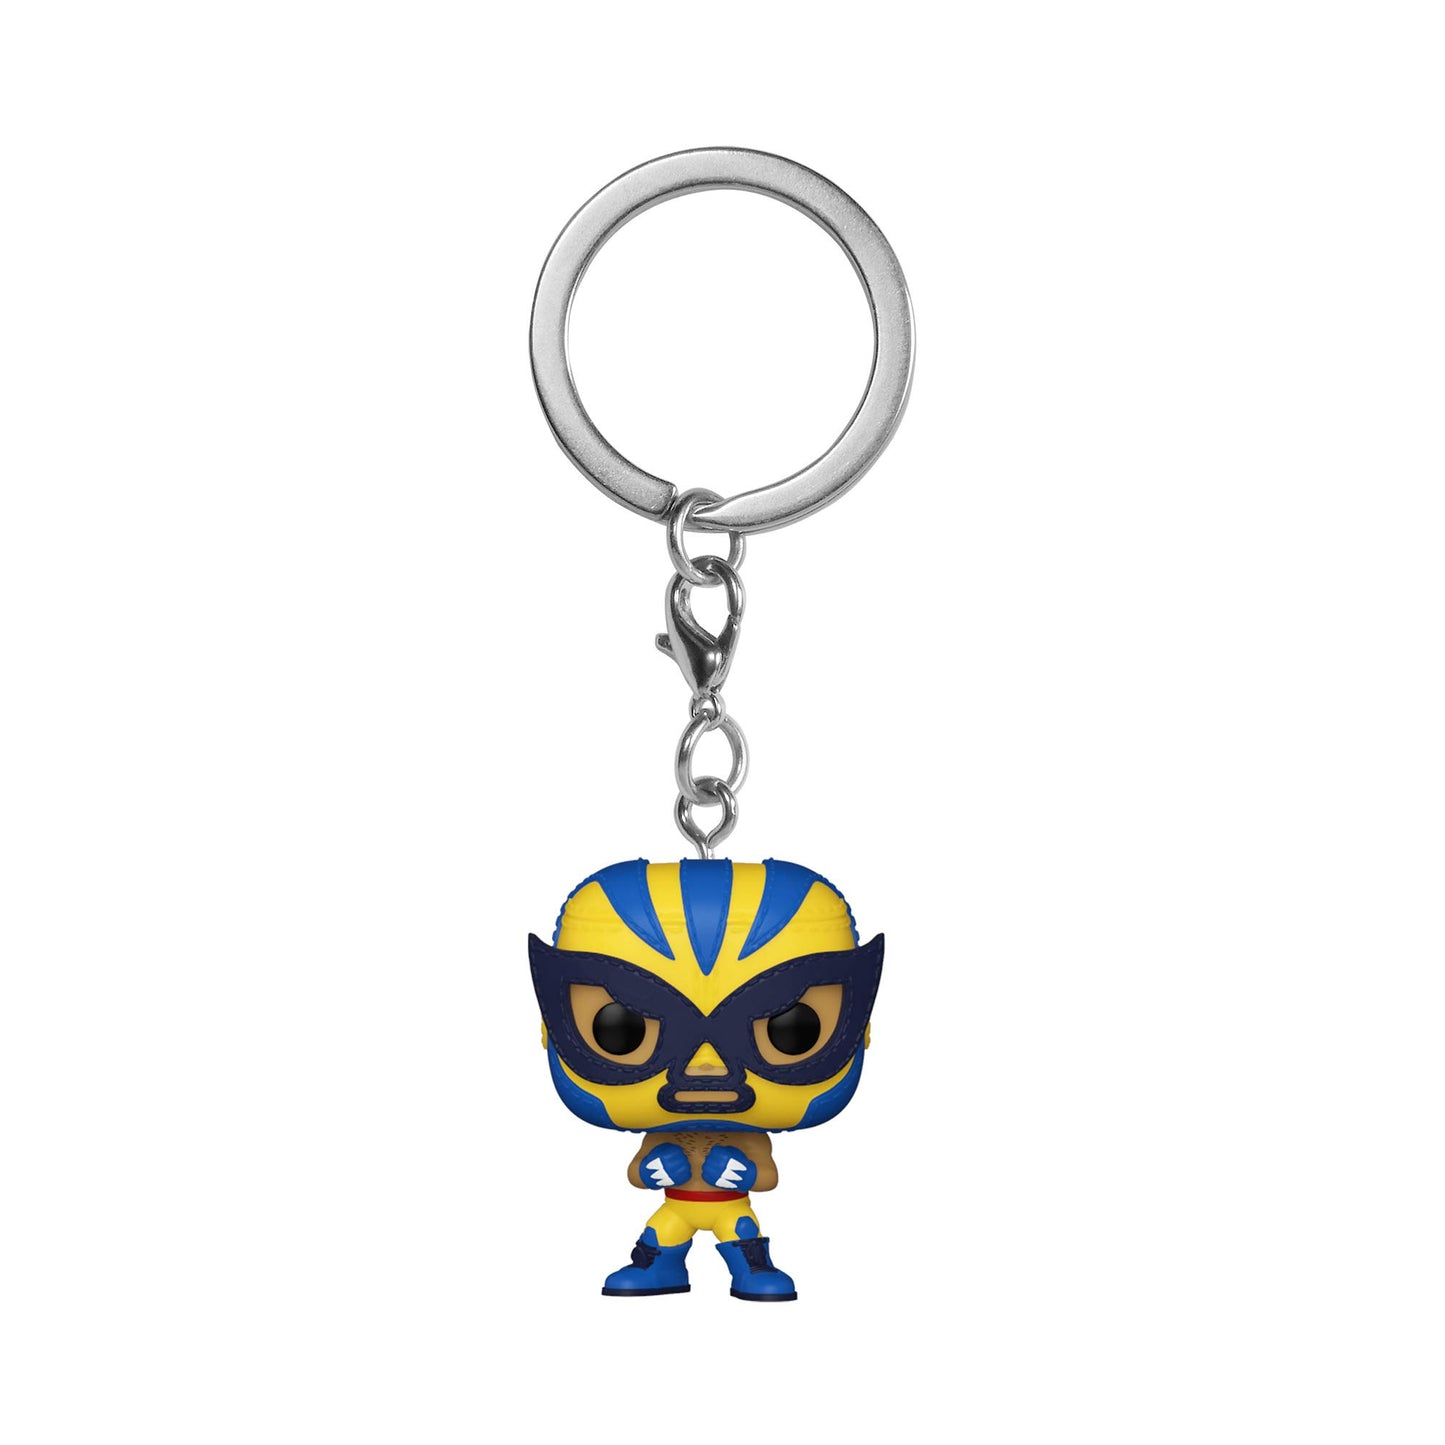 Funko Pocket POP! Keychain: Marvel Luchadores - Wolverine, 2 inches